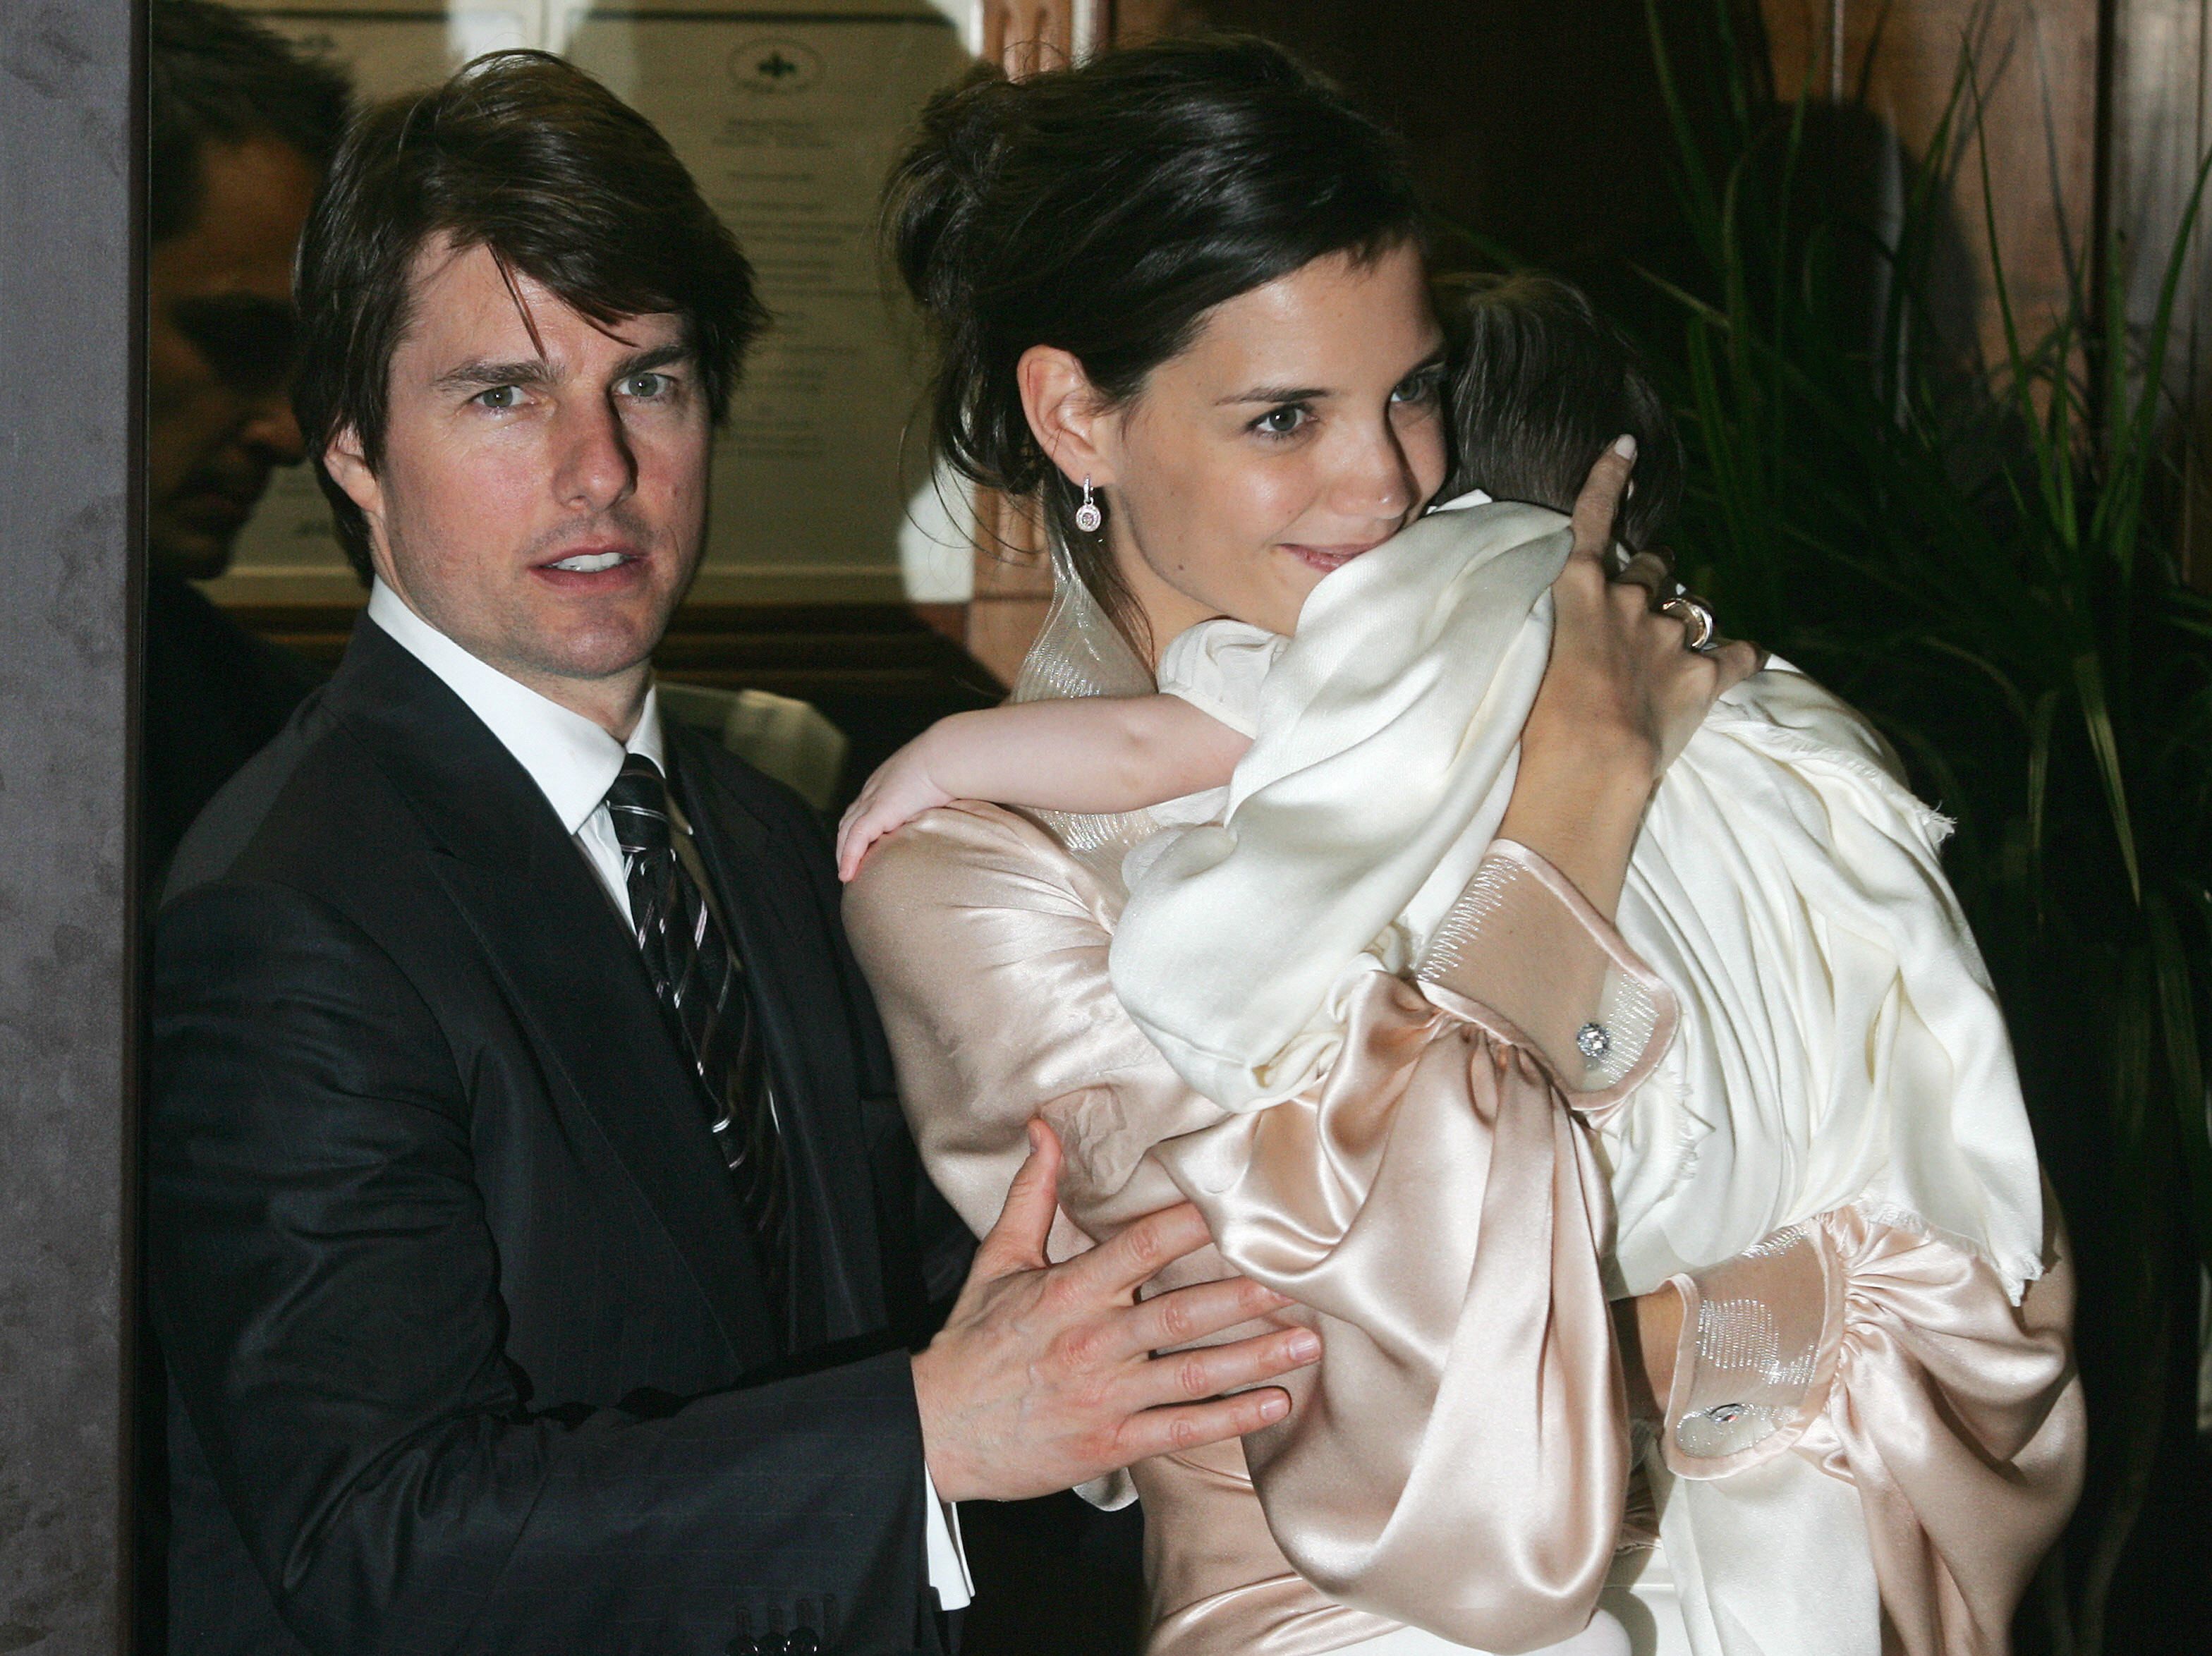 Tom Cruise und Katie Holmes halten ihre Tochter Suri am 17. November 2006 im Zentrum von Rom. | Quelle: Getty Images